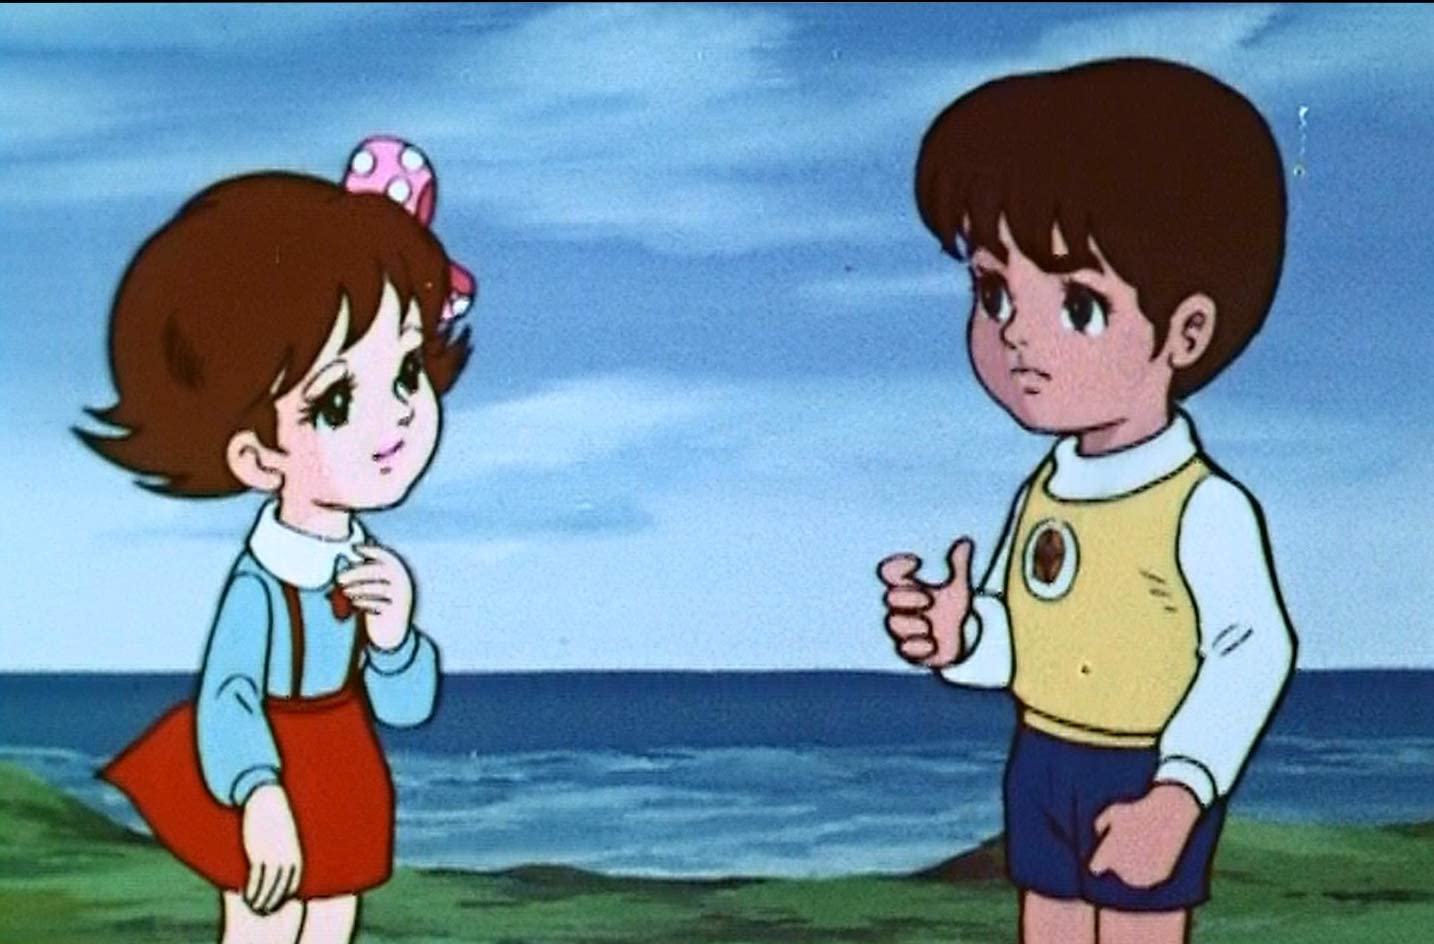 50年经典动画《铁甲飞天侠》复归 高清蓝光大碟12月23日发售